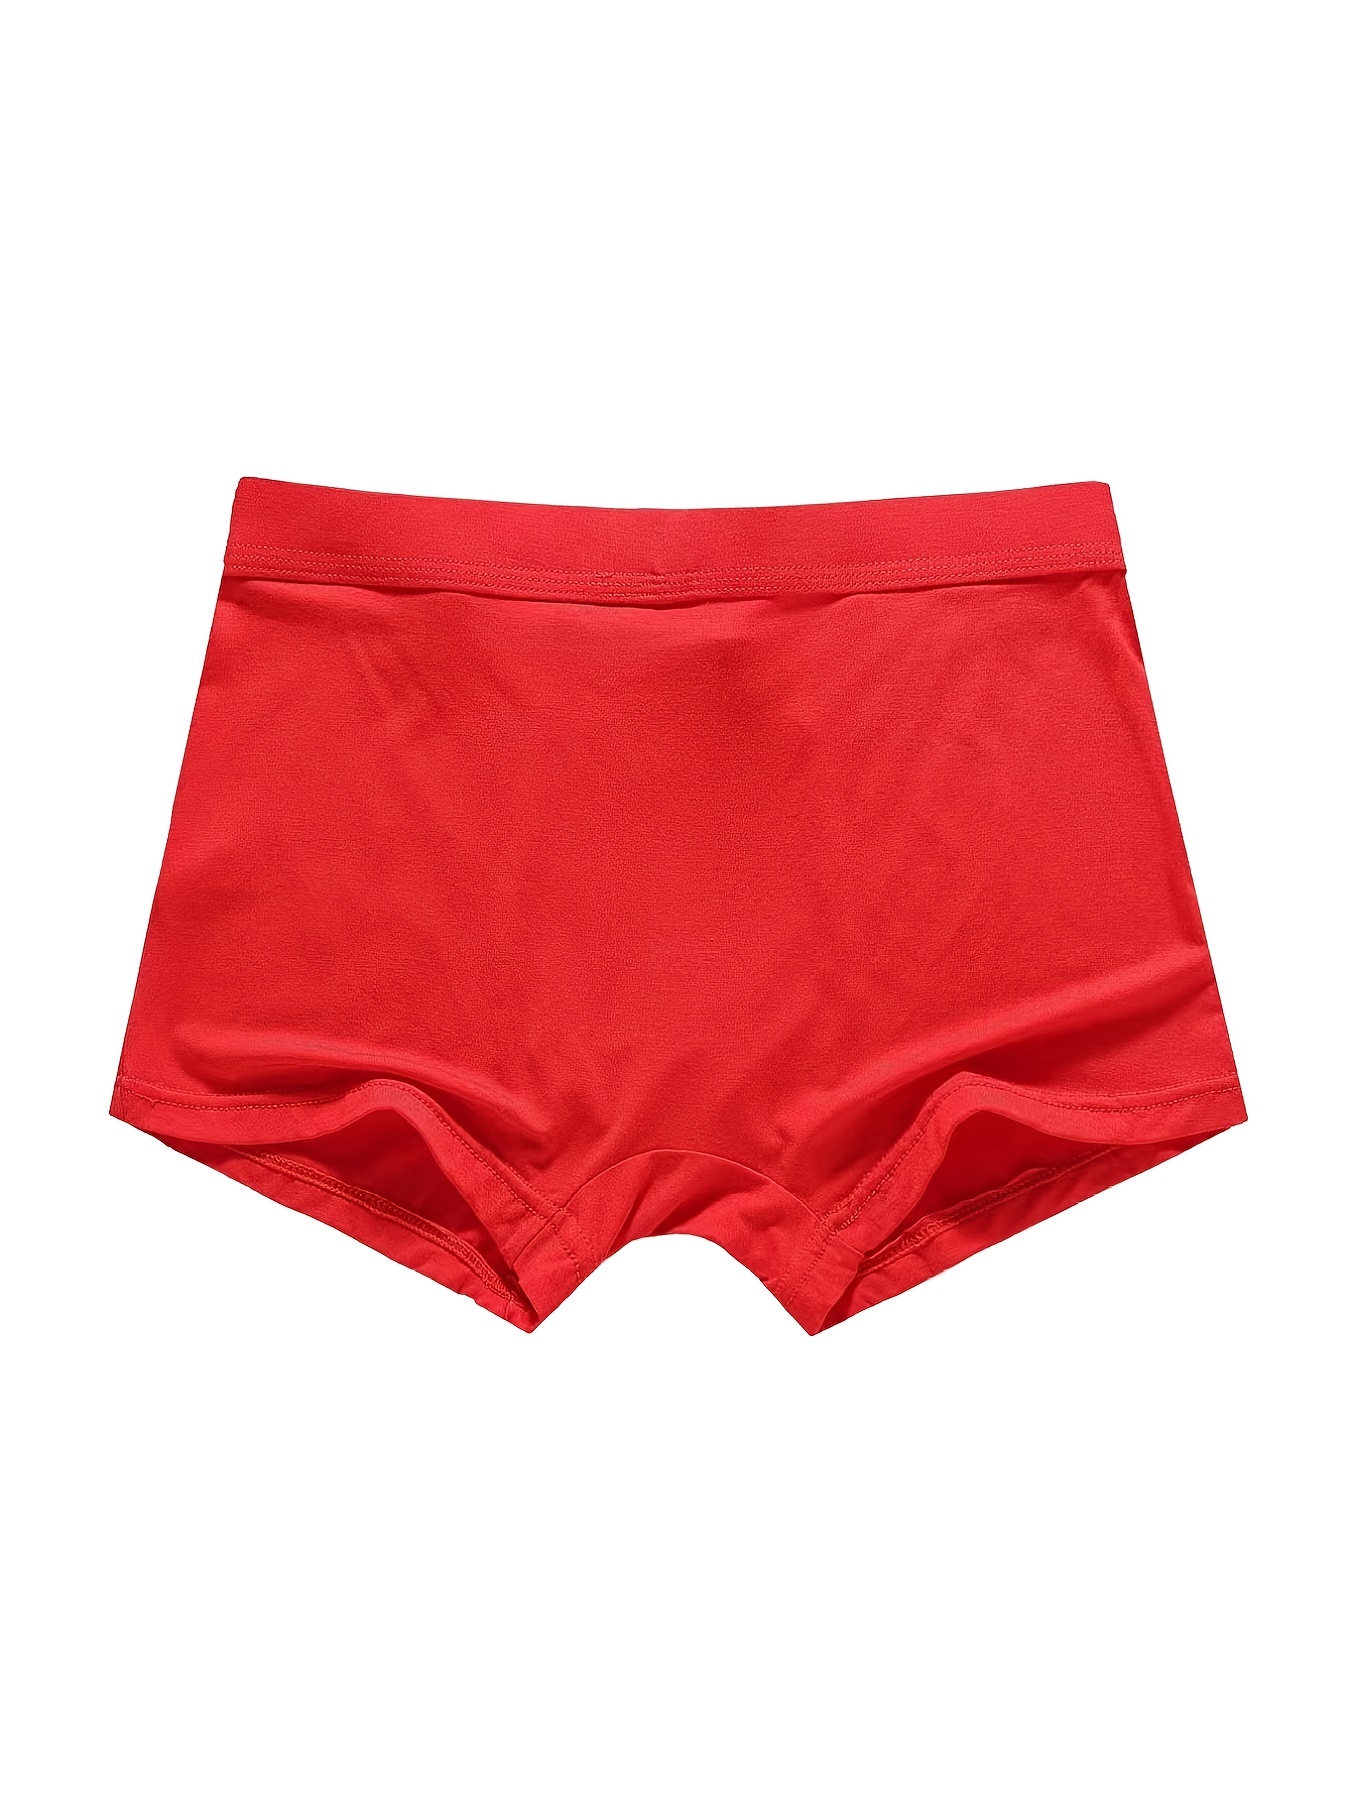 4 Pcs Big Size Red Men Boxer Shorts Cotton Knickers Underpants